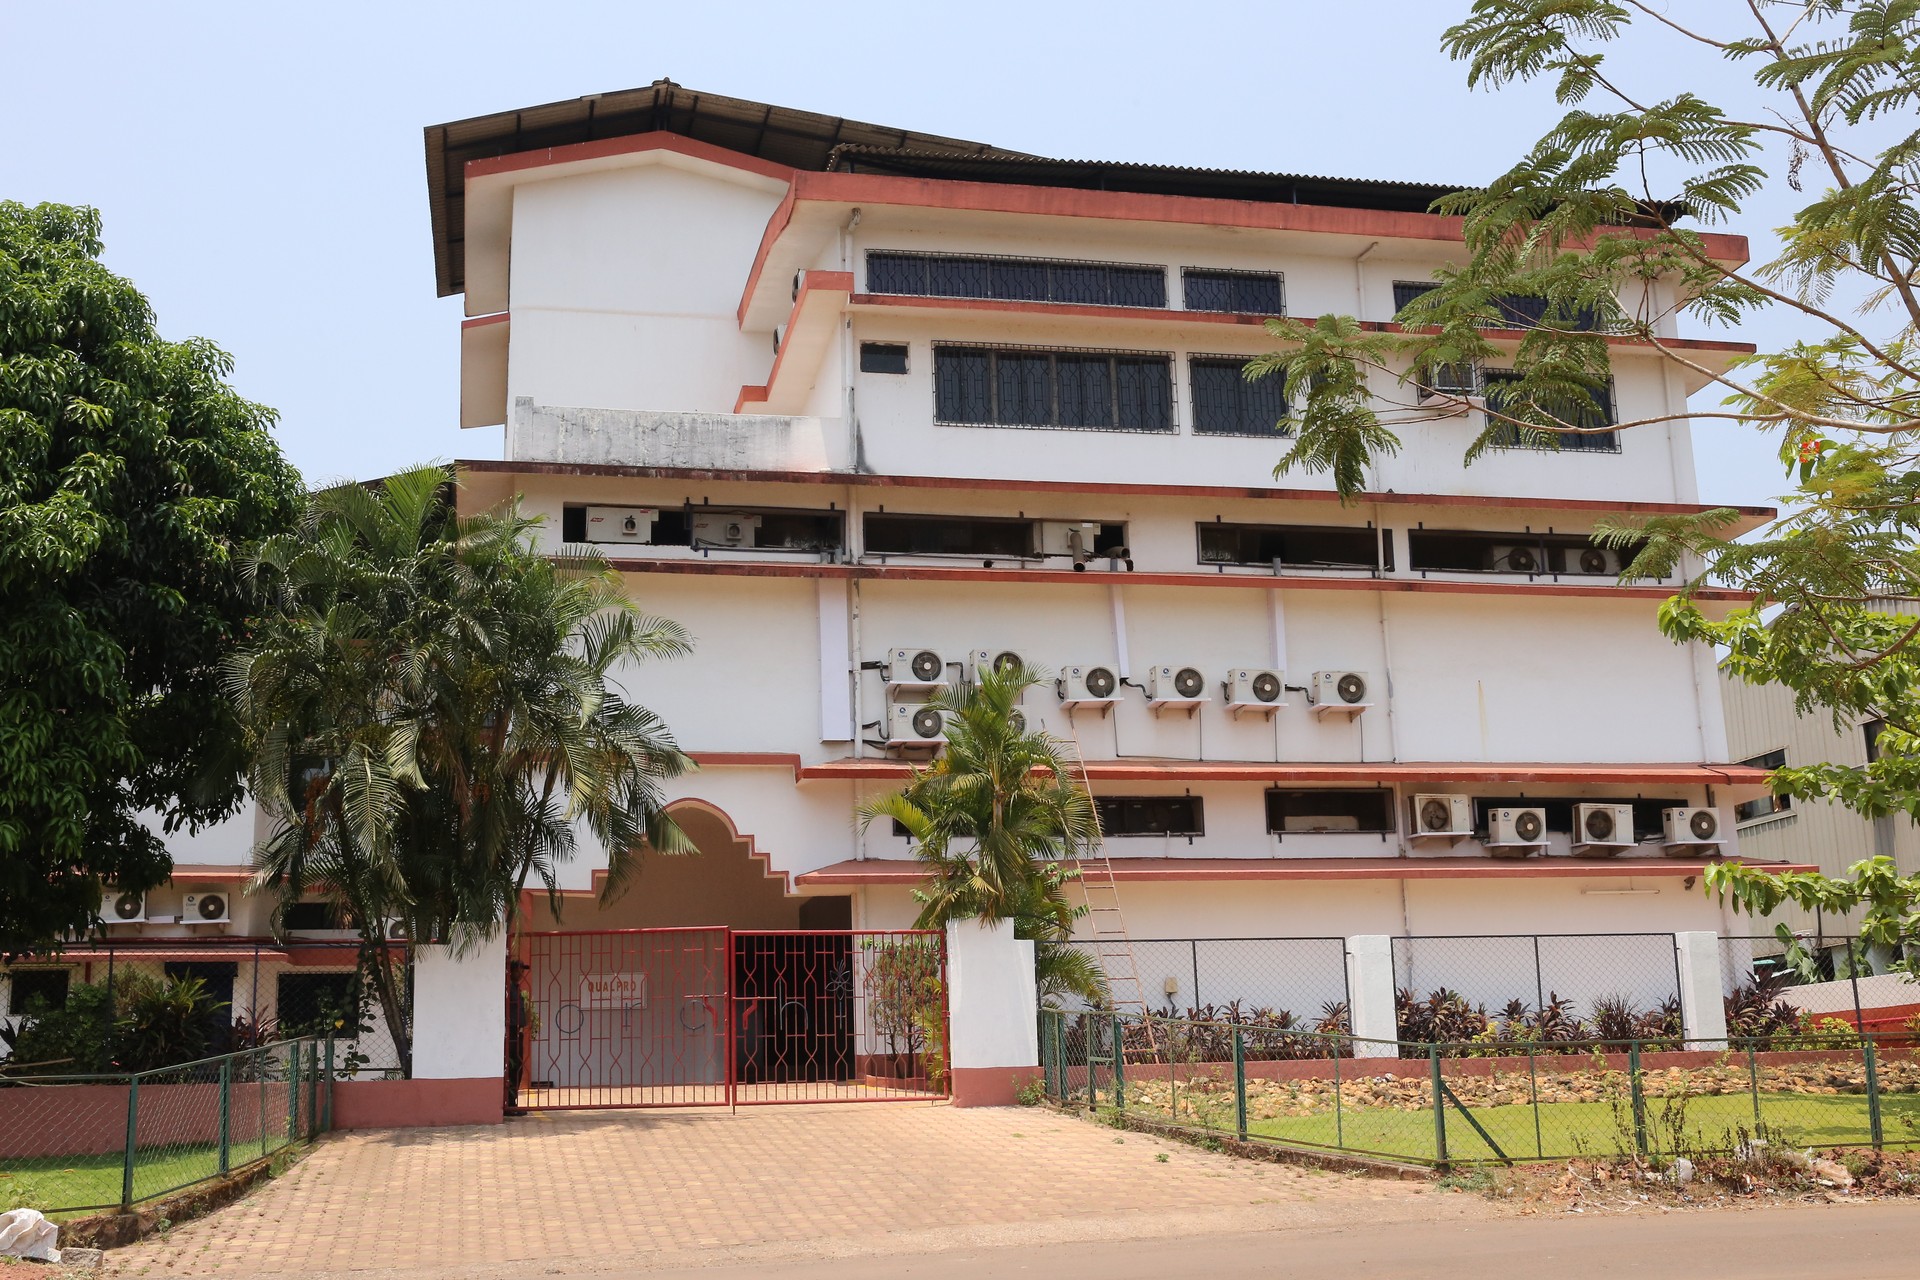 Qualpro Diagnostics building at Verna, Goa